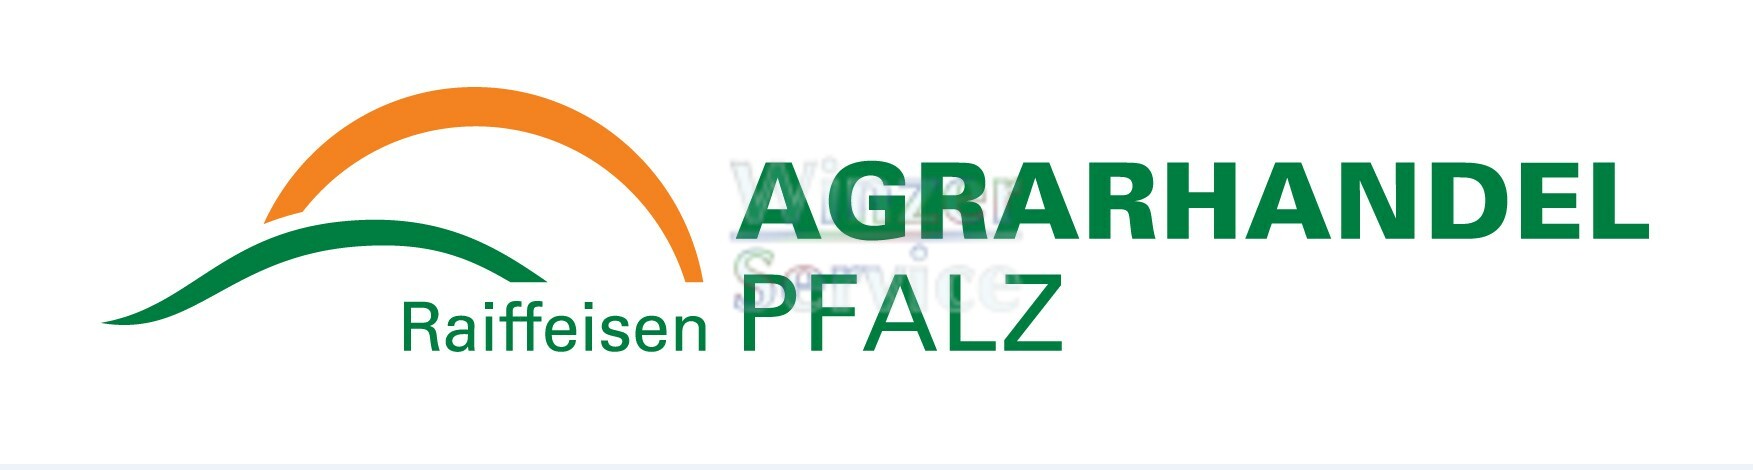 Raiffeisen Agrarhandel Pfalz GmbH 